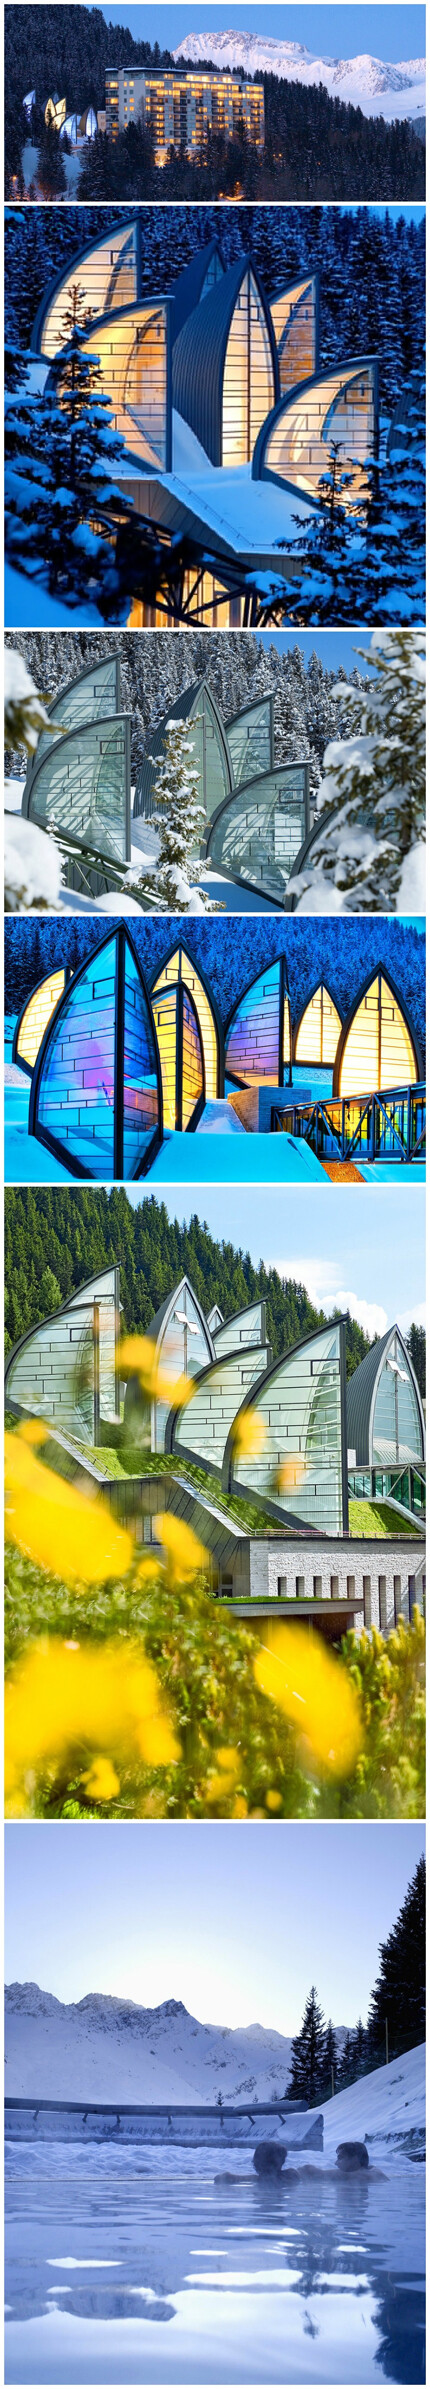 瑞士楚根酒店 Tschuggen Grand Hotel 藏于圣莫里茨（St.Moritz）附近的海拔1800米的山脉中，靠近滑雪度假胜地阿罗萨（Arosa）。高高的金属框架和玻璃幕墙组成帆船形的外观，它们连成一片，形成锯齿状。上面是白雪覆盖的山顶，四周是教堂式的彩色玻璃窗。水蓝色玻璃和白色花岗岩搭建起的一座桥连接了这座名为“山中绿洲（Tschuggen Bergoase）”的SPA建筑和楚根大酒店（Tschuggen Grand Hotel）